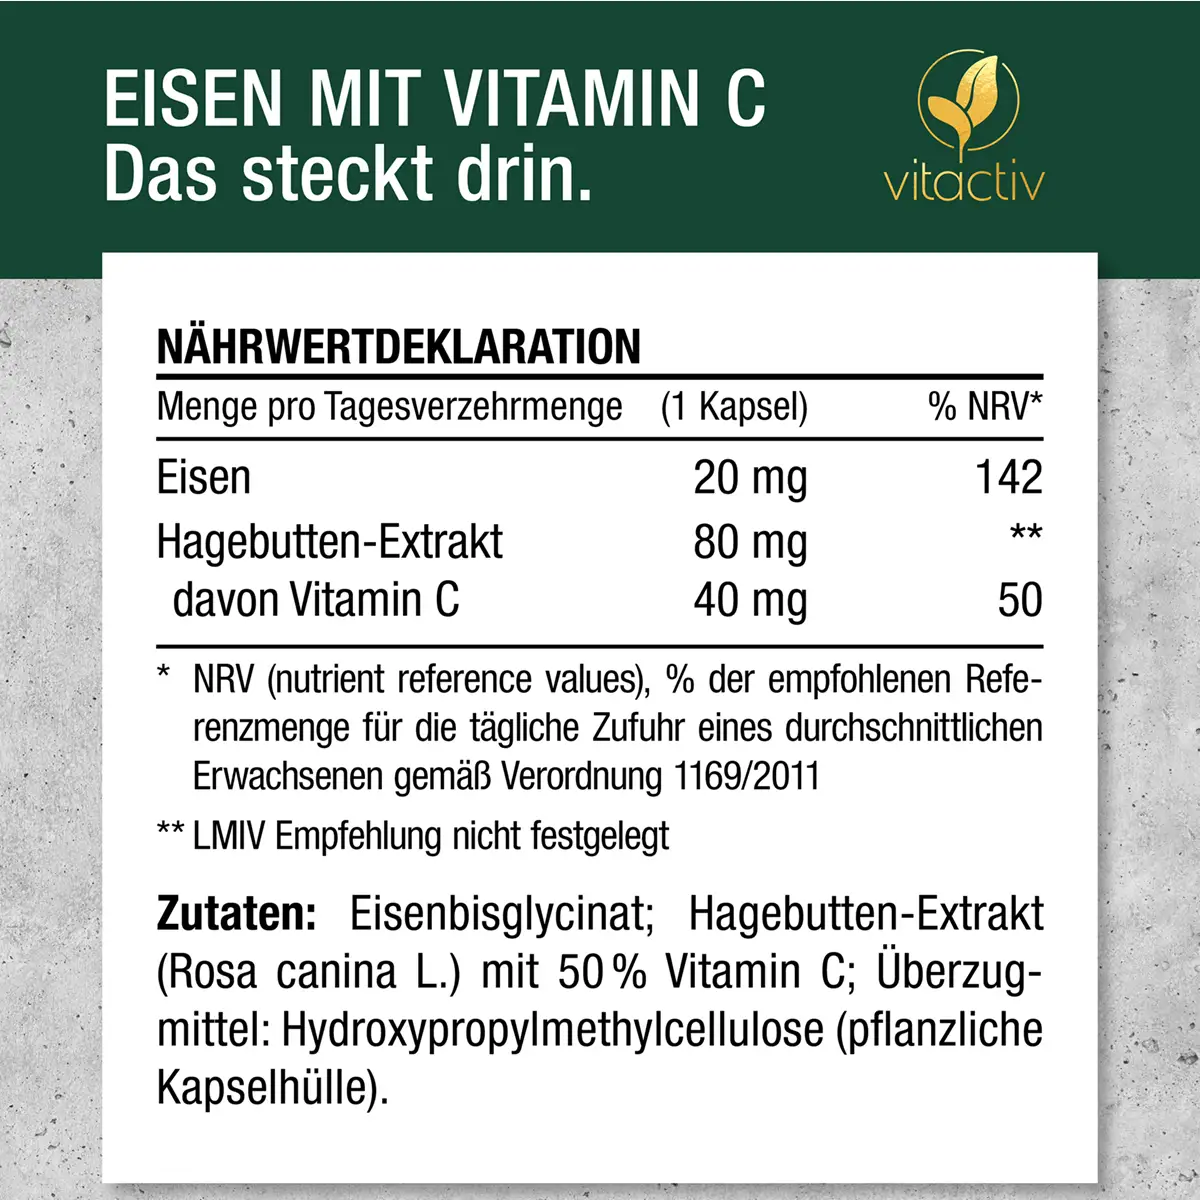 A821_Eisen-mit-Vitamin-C-18839884-09-1200px_1920x1920